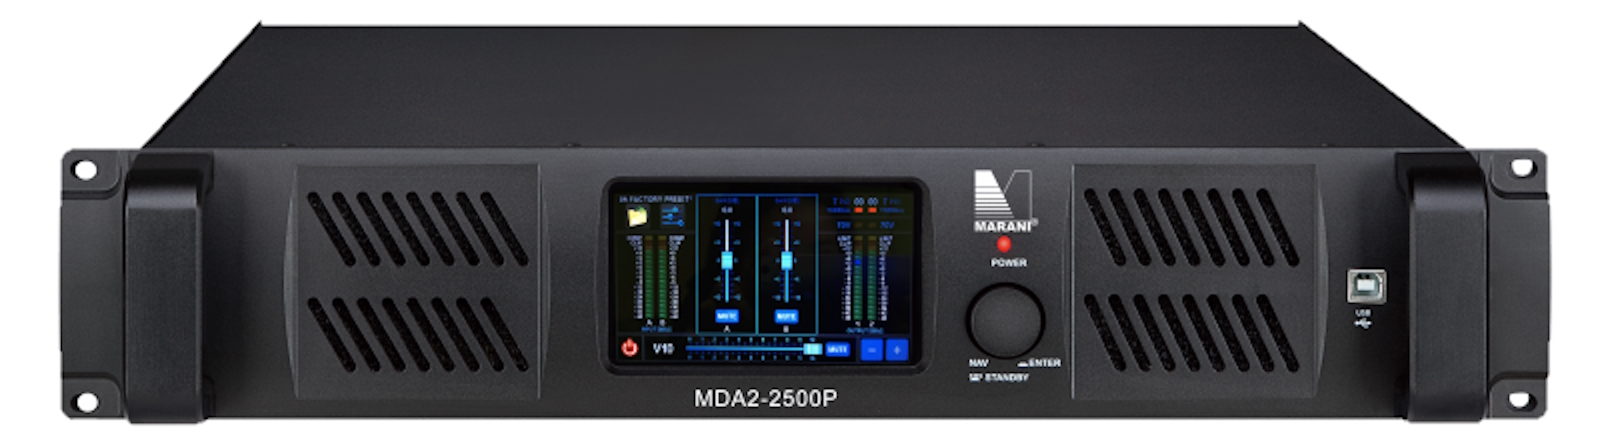 Усилители двухканальные Marani MDA2-2500P DANTE усилители двухканальные marani mda2 2500m